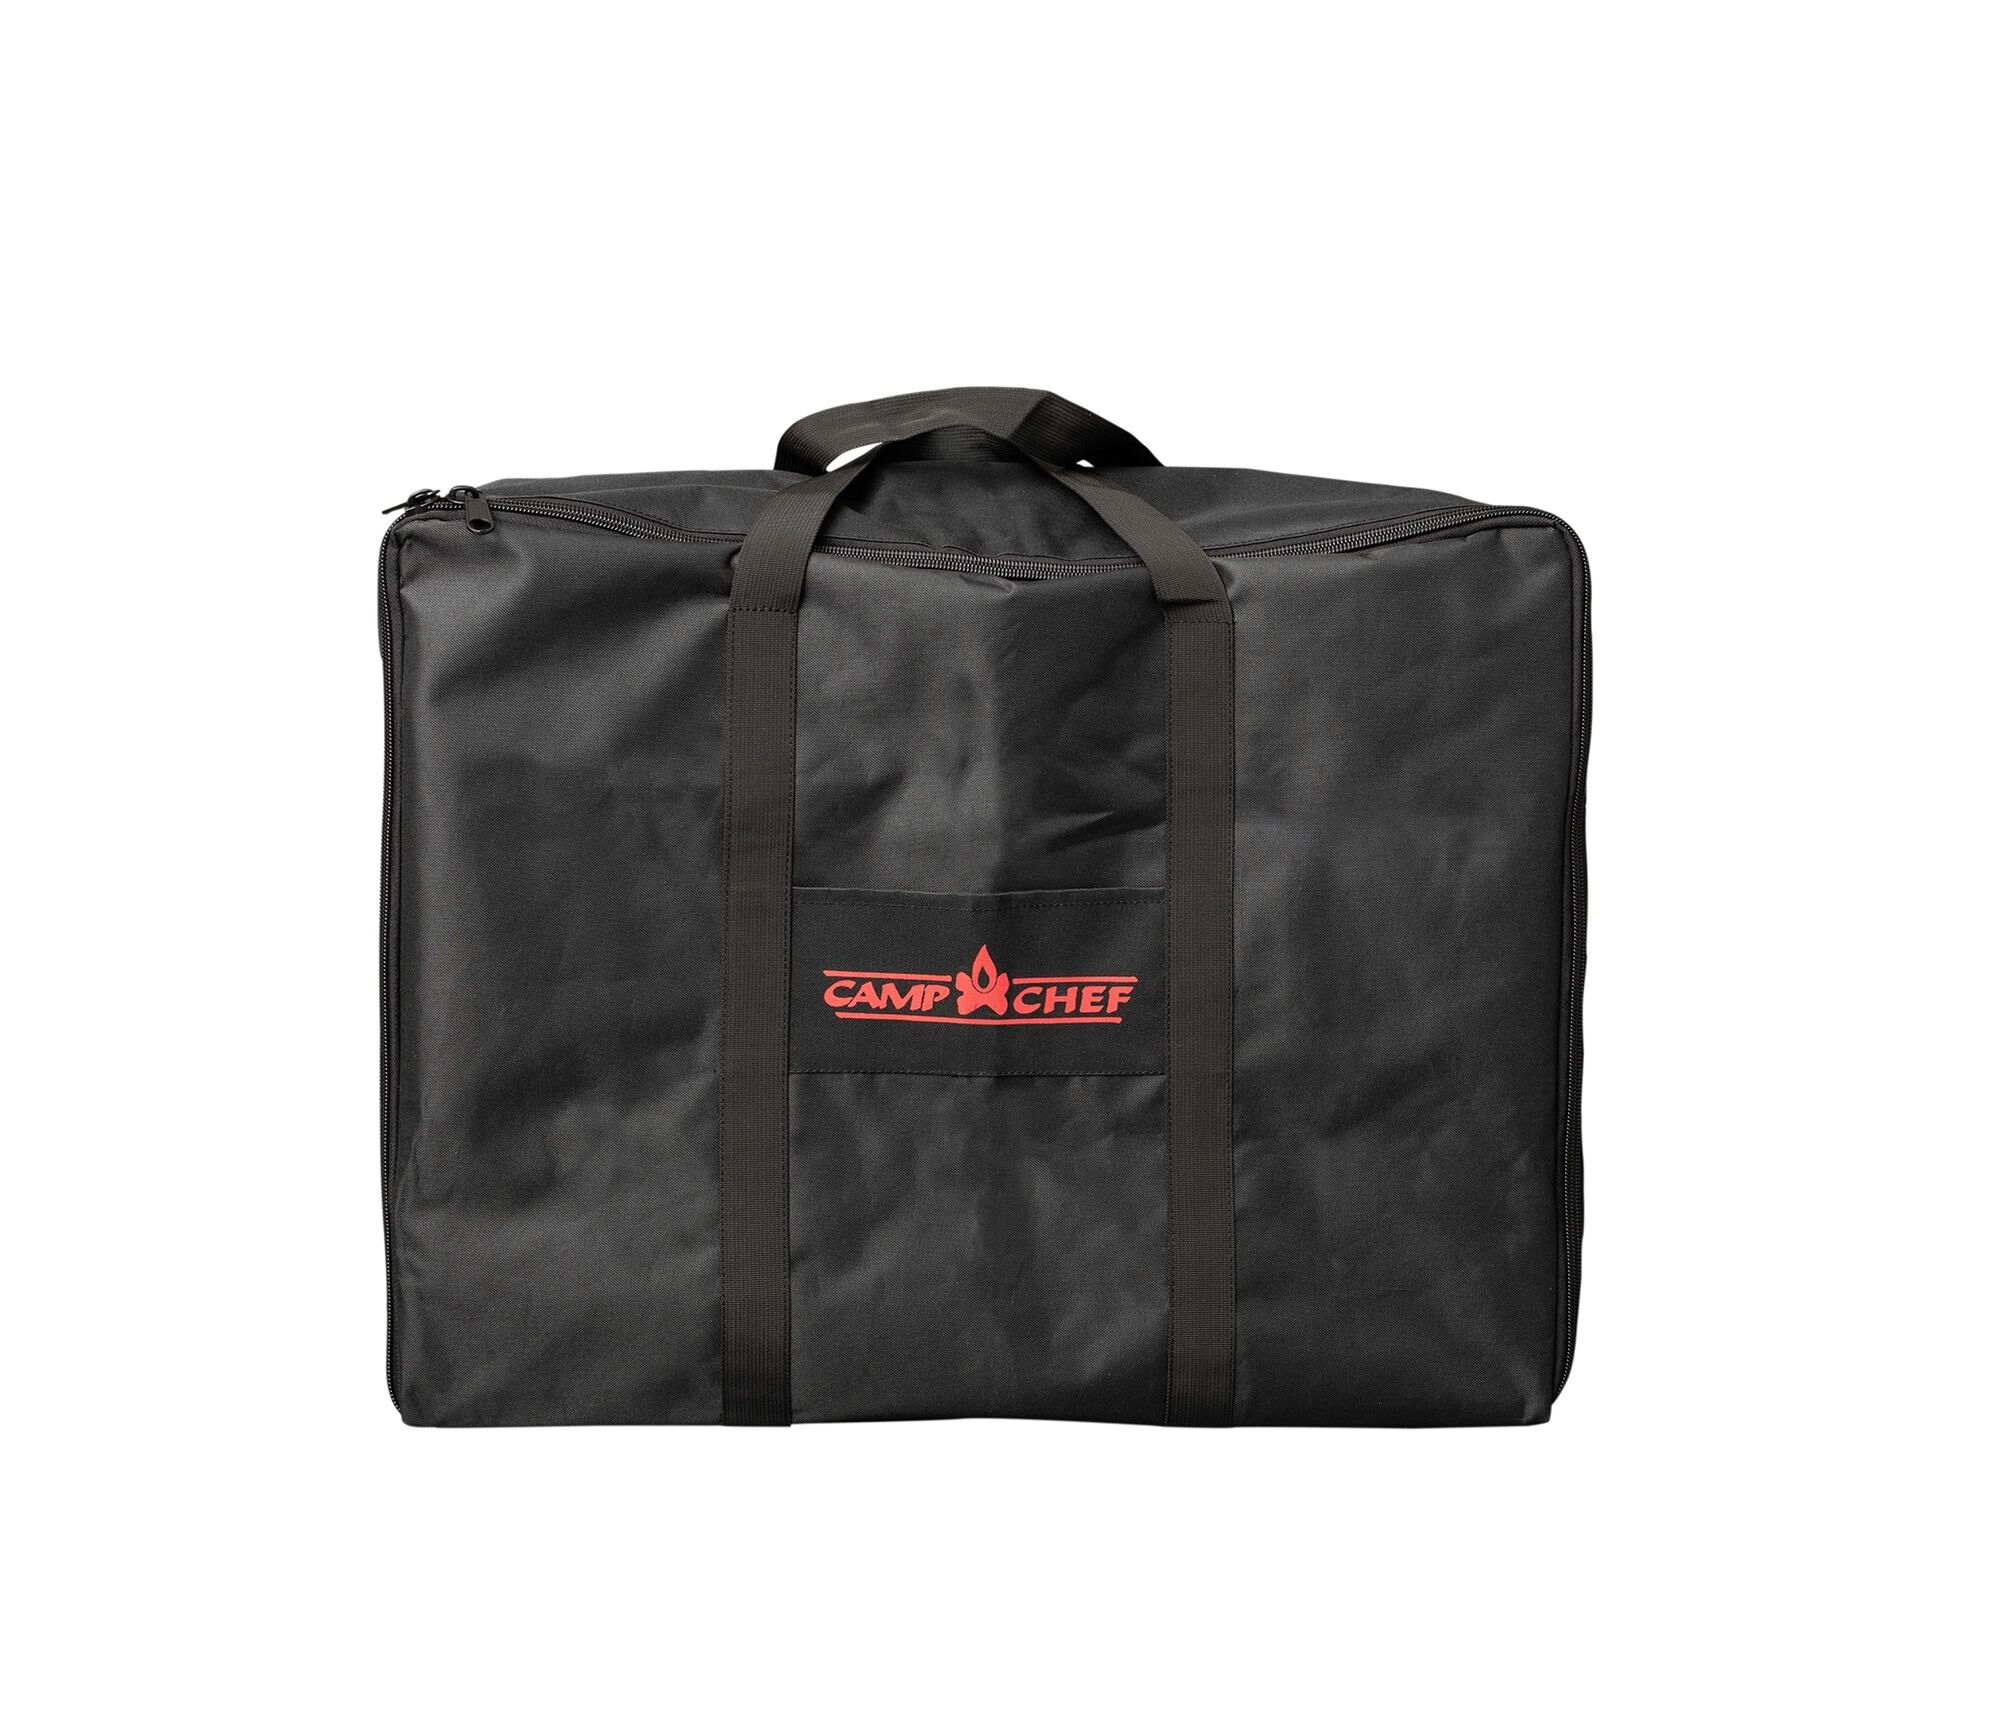 VersaTop 2X Carry bag